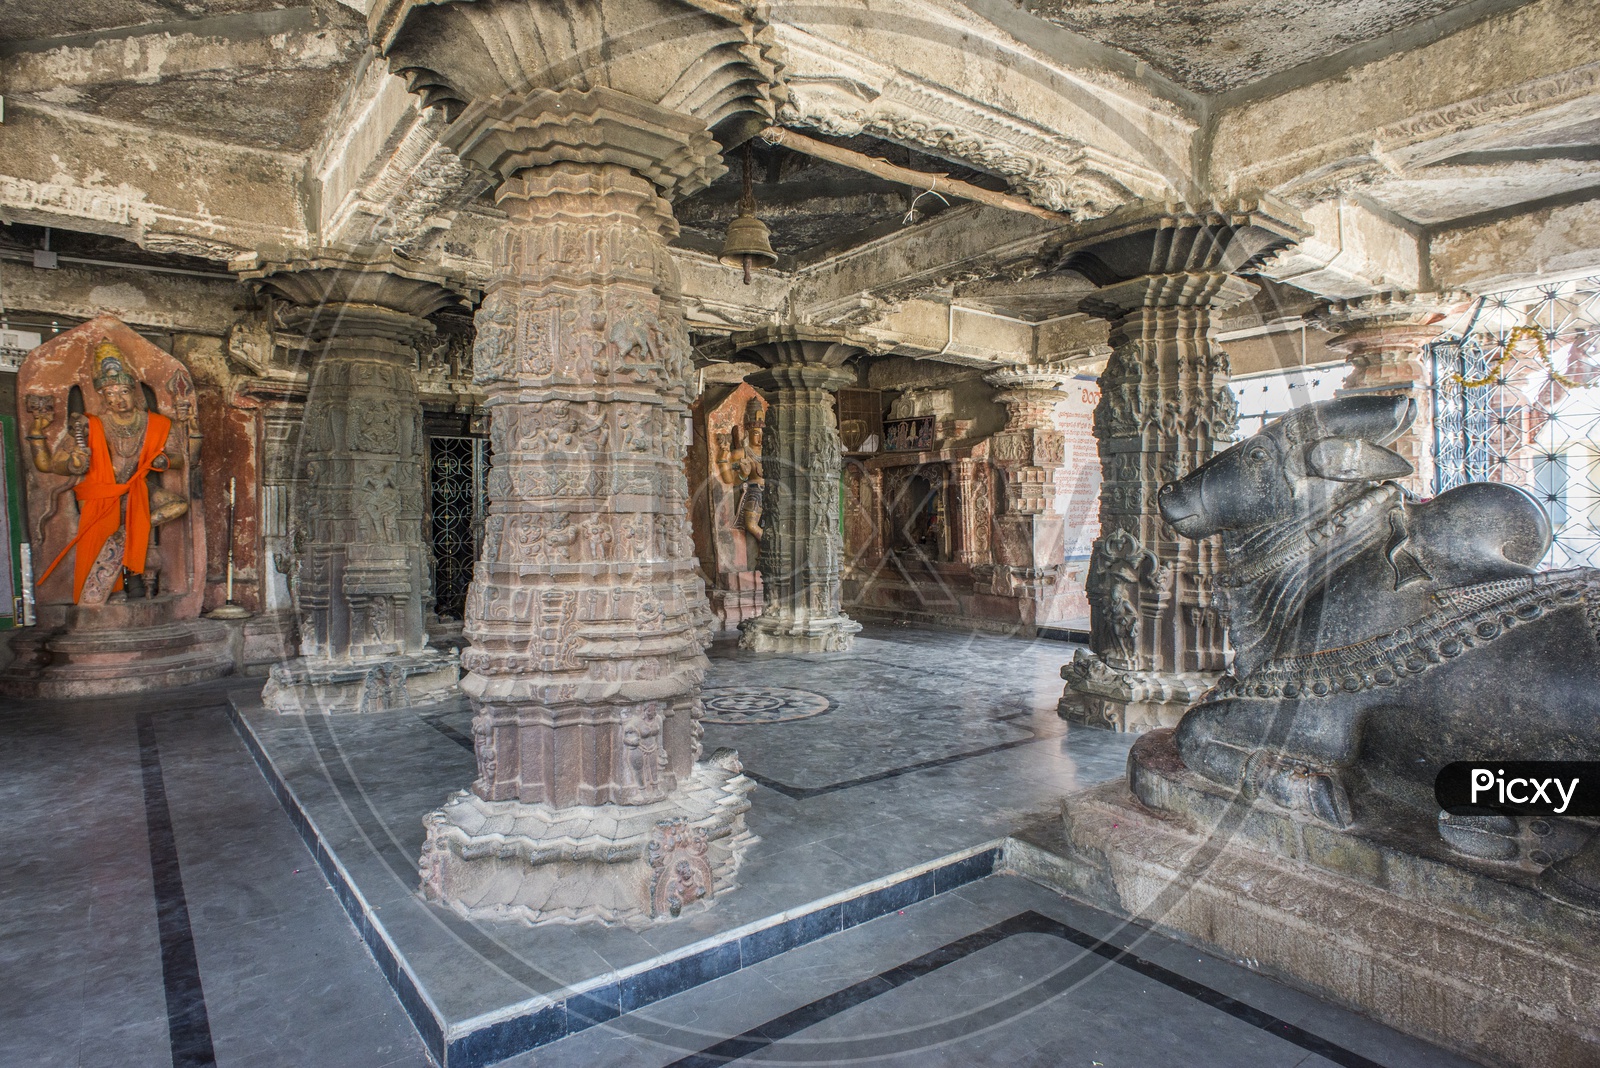 Sri Ramalingeshwara Temple